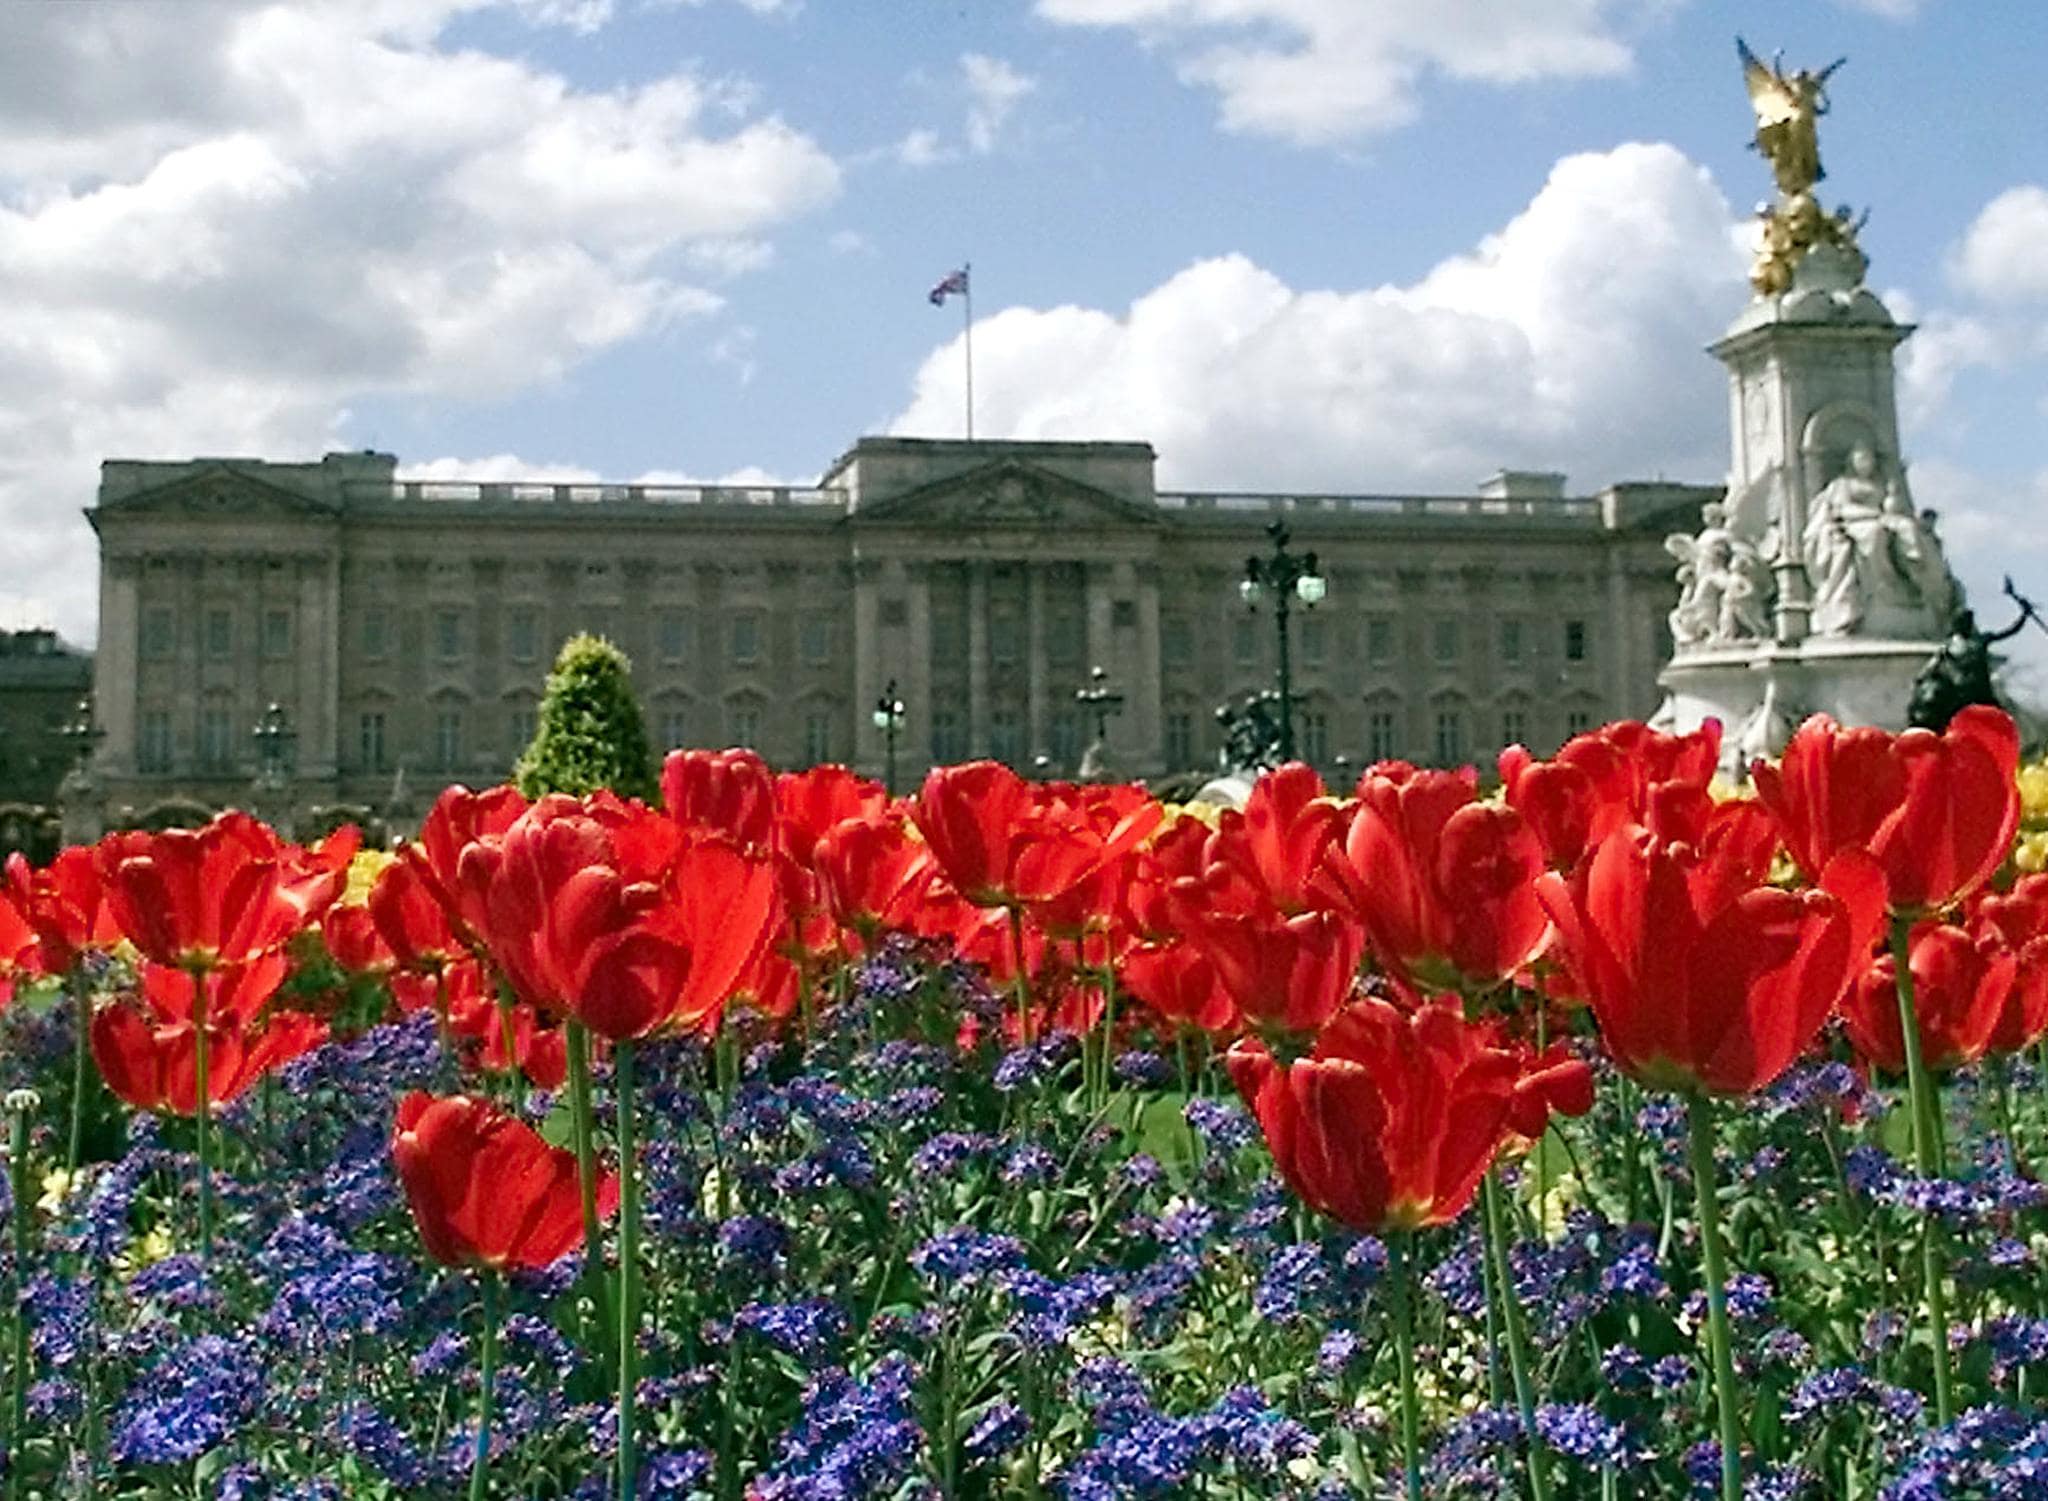 royal residences - Buckingham Palace